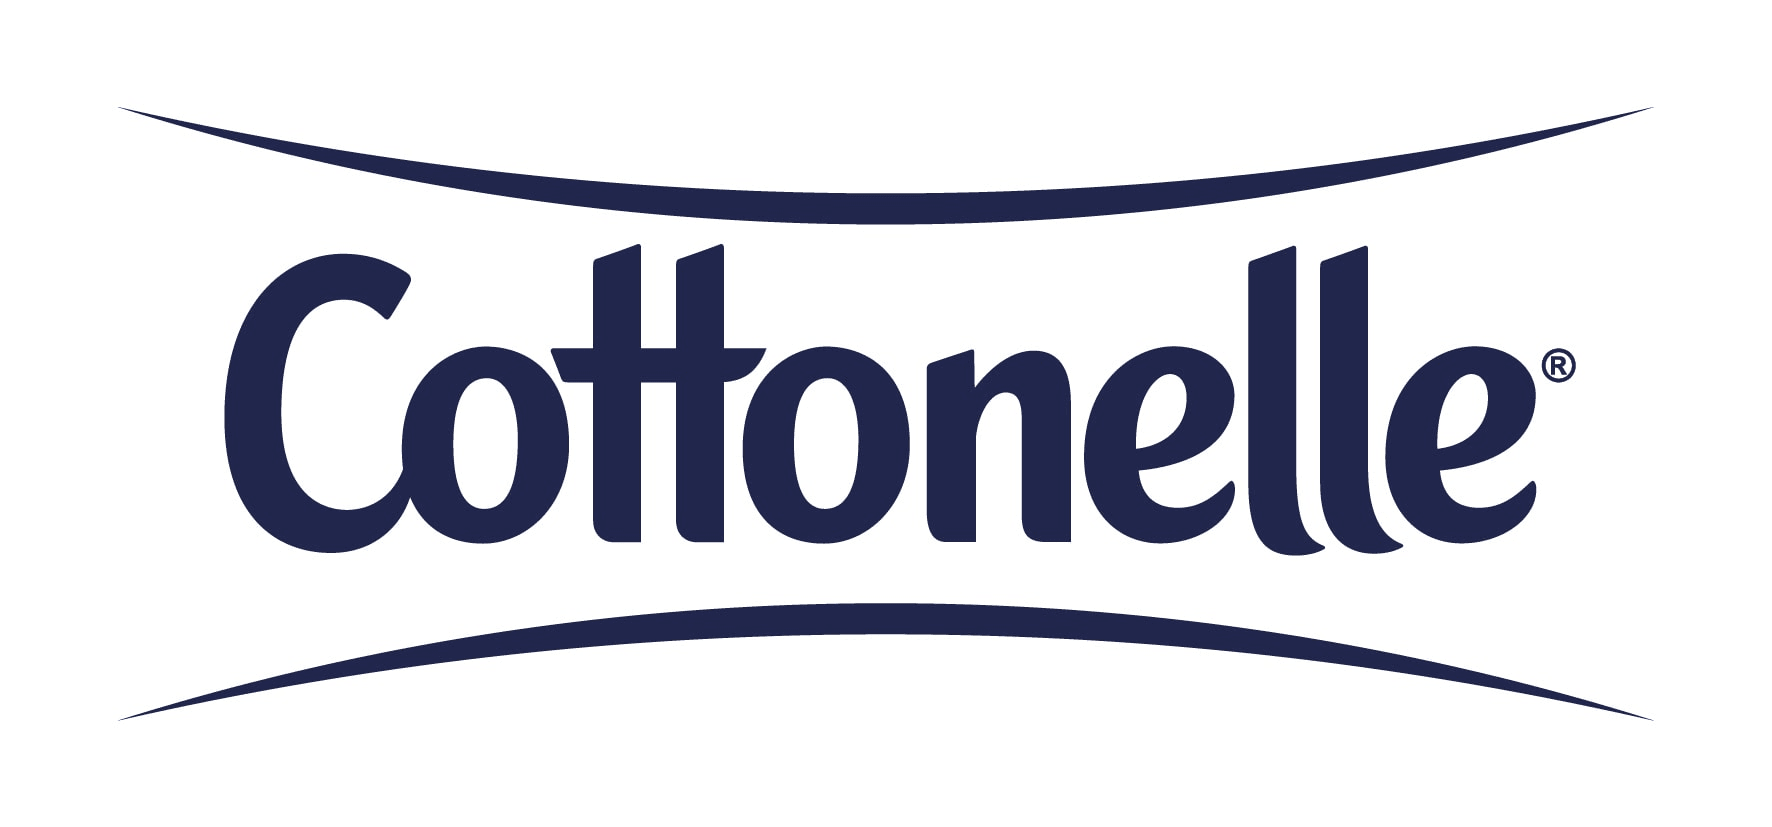 Cottonelle